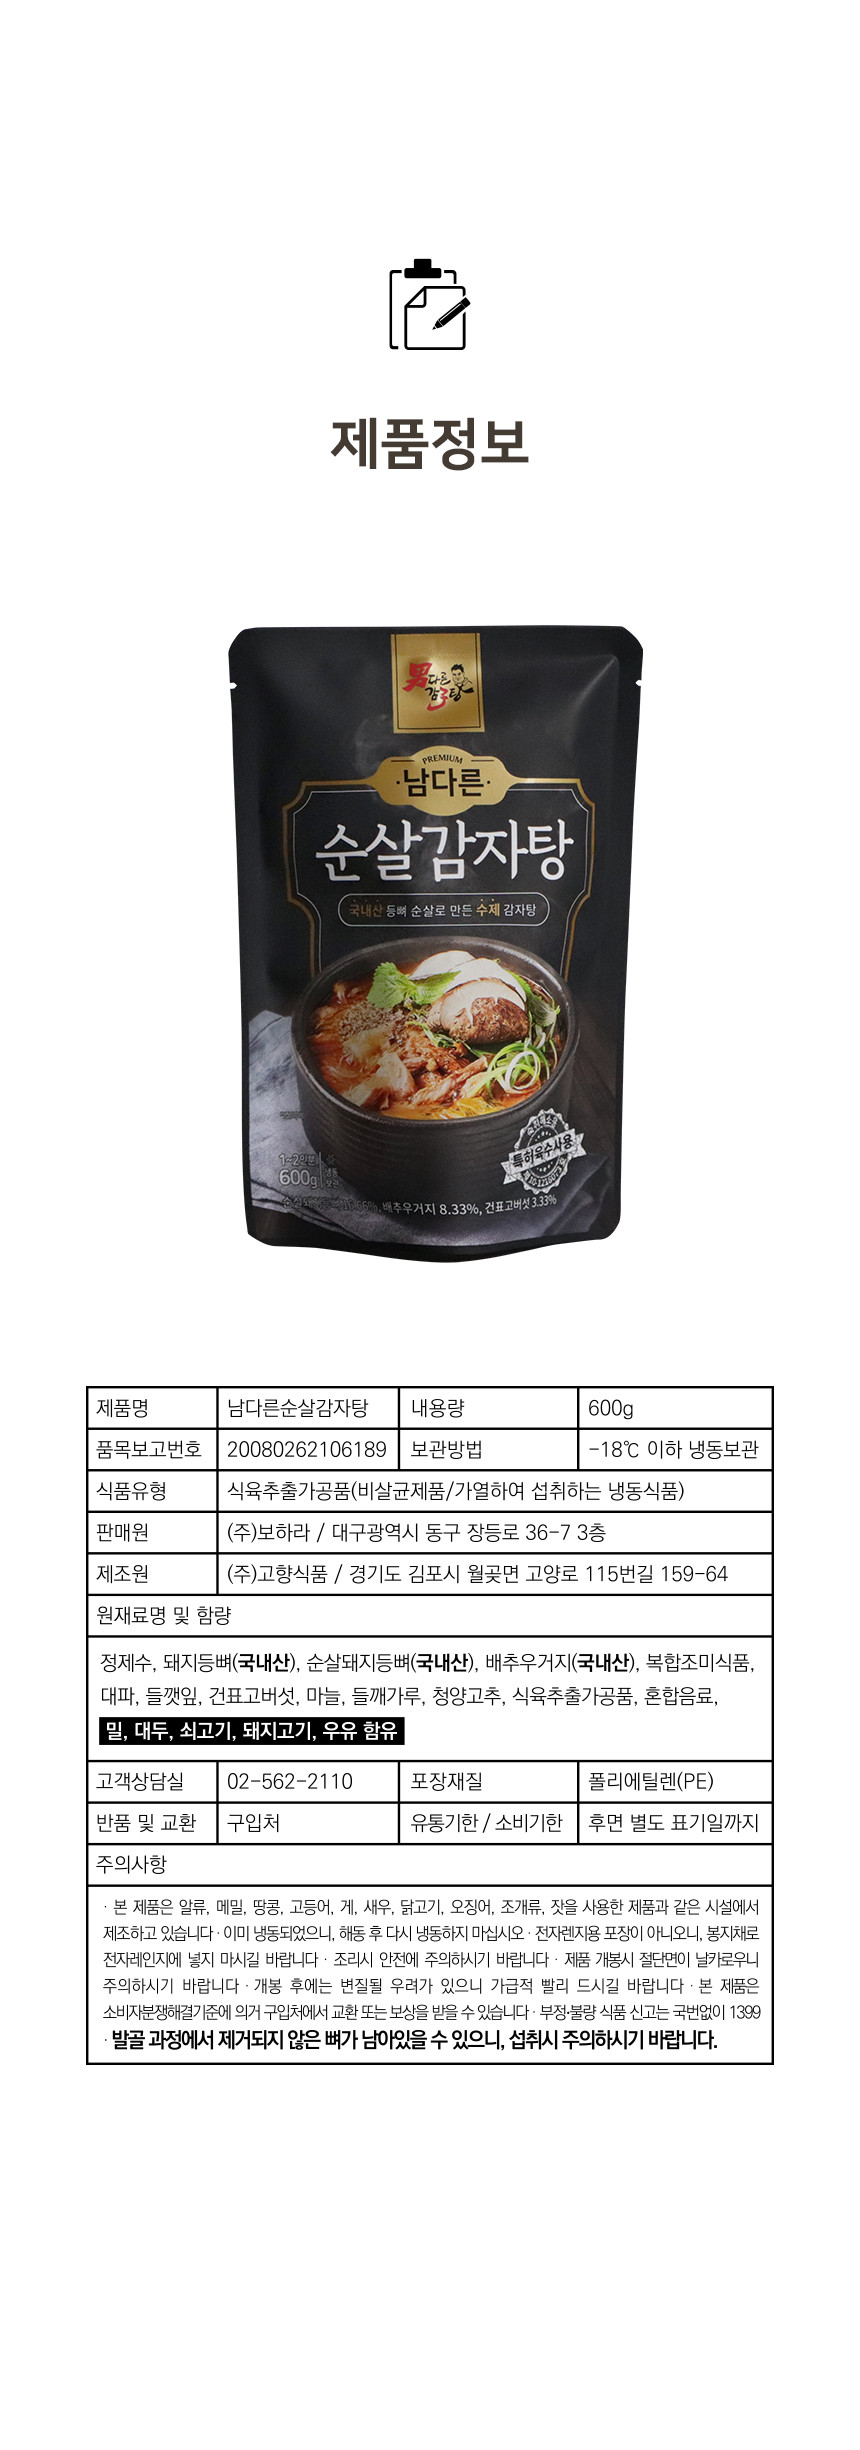 韓國食品-[Namzatang] Boneless Gamjatang 600g